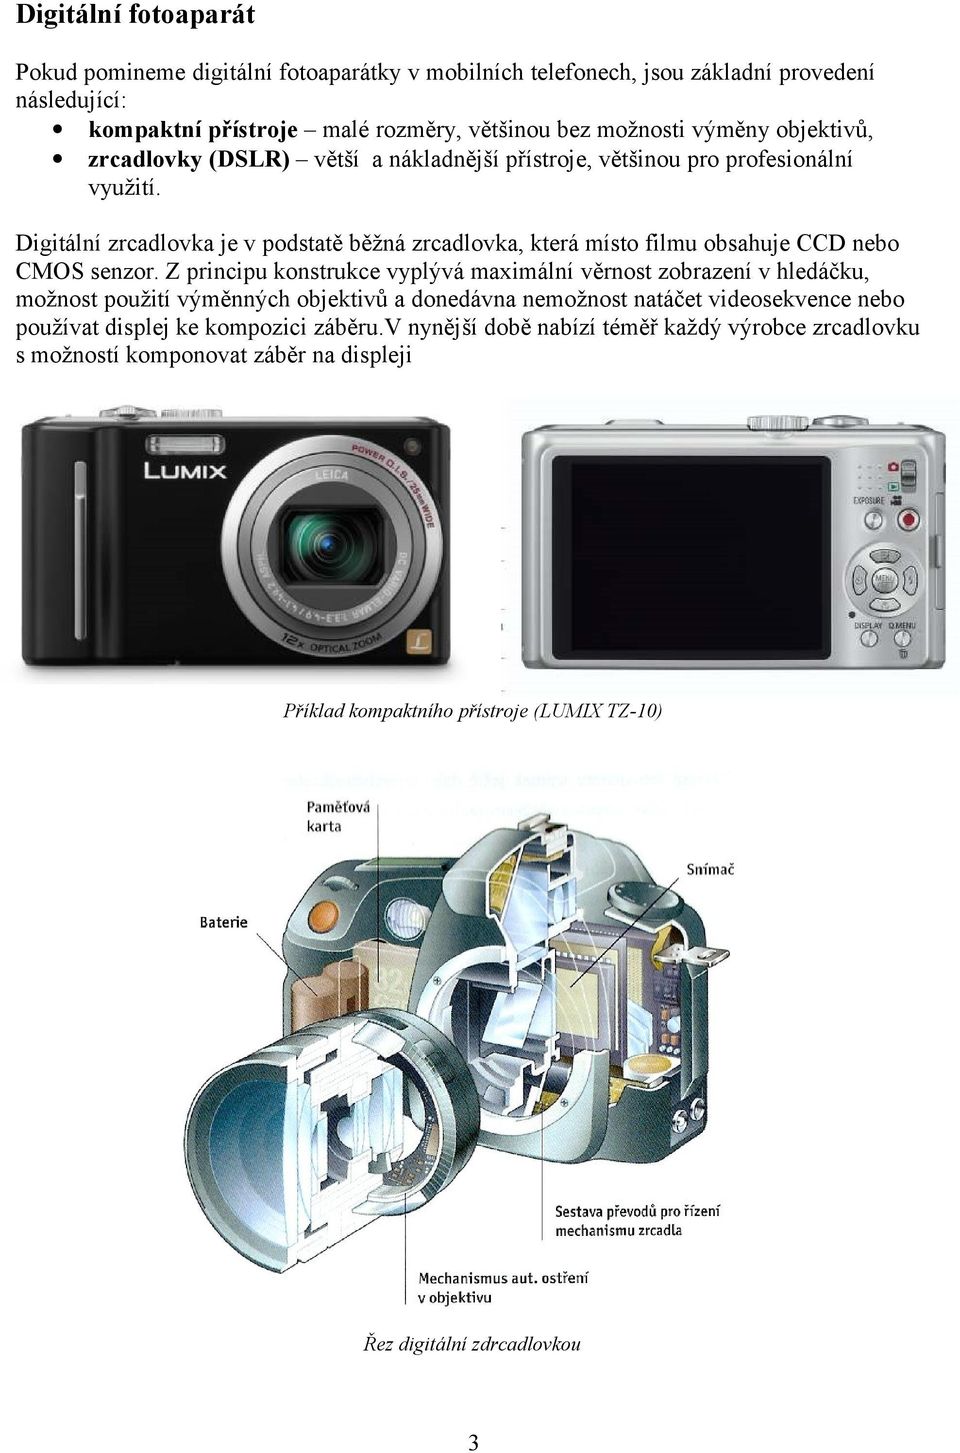 Digitální zrcadlovka je v podstatě běžná zrcadlovka, která místo filmu obsahuje CCD nebo CMOS senzor.